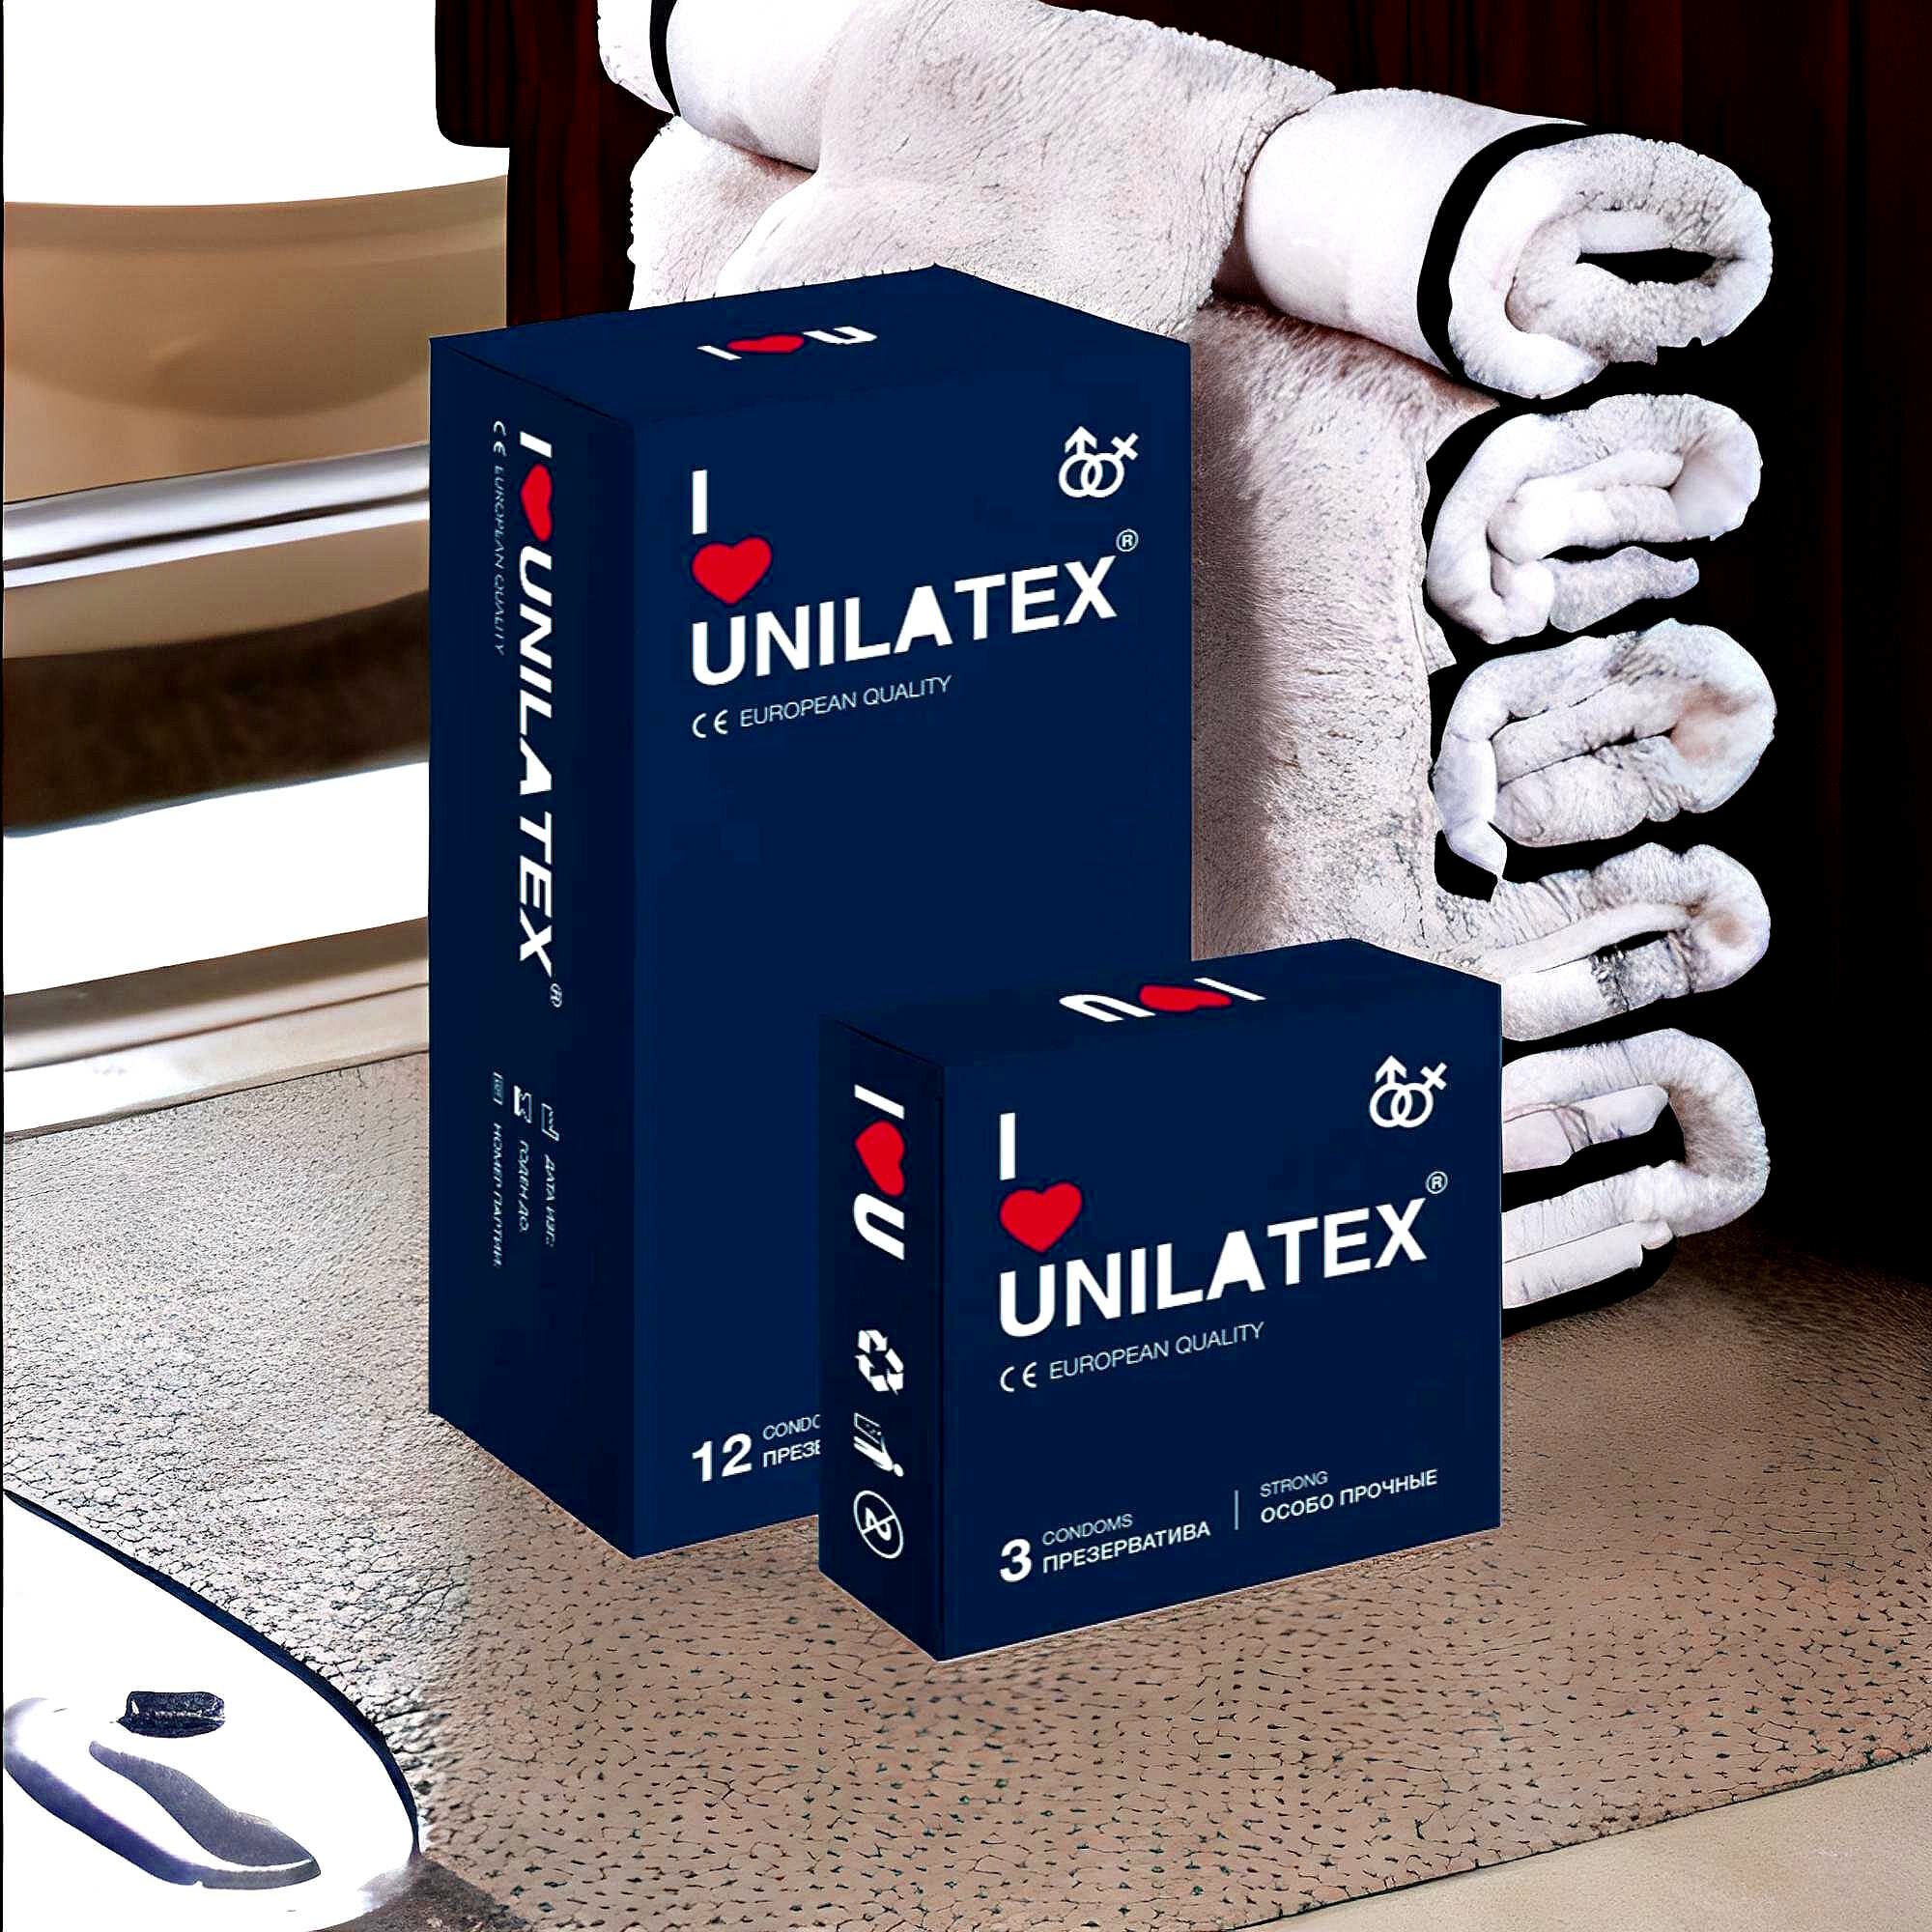 Презервативы Unilatex 12 штук + 3 в подарок, особо прочные для животного секса